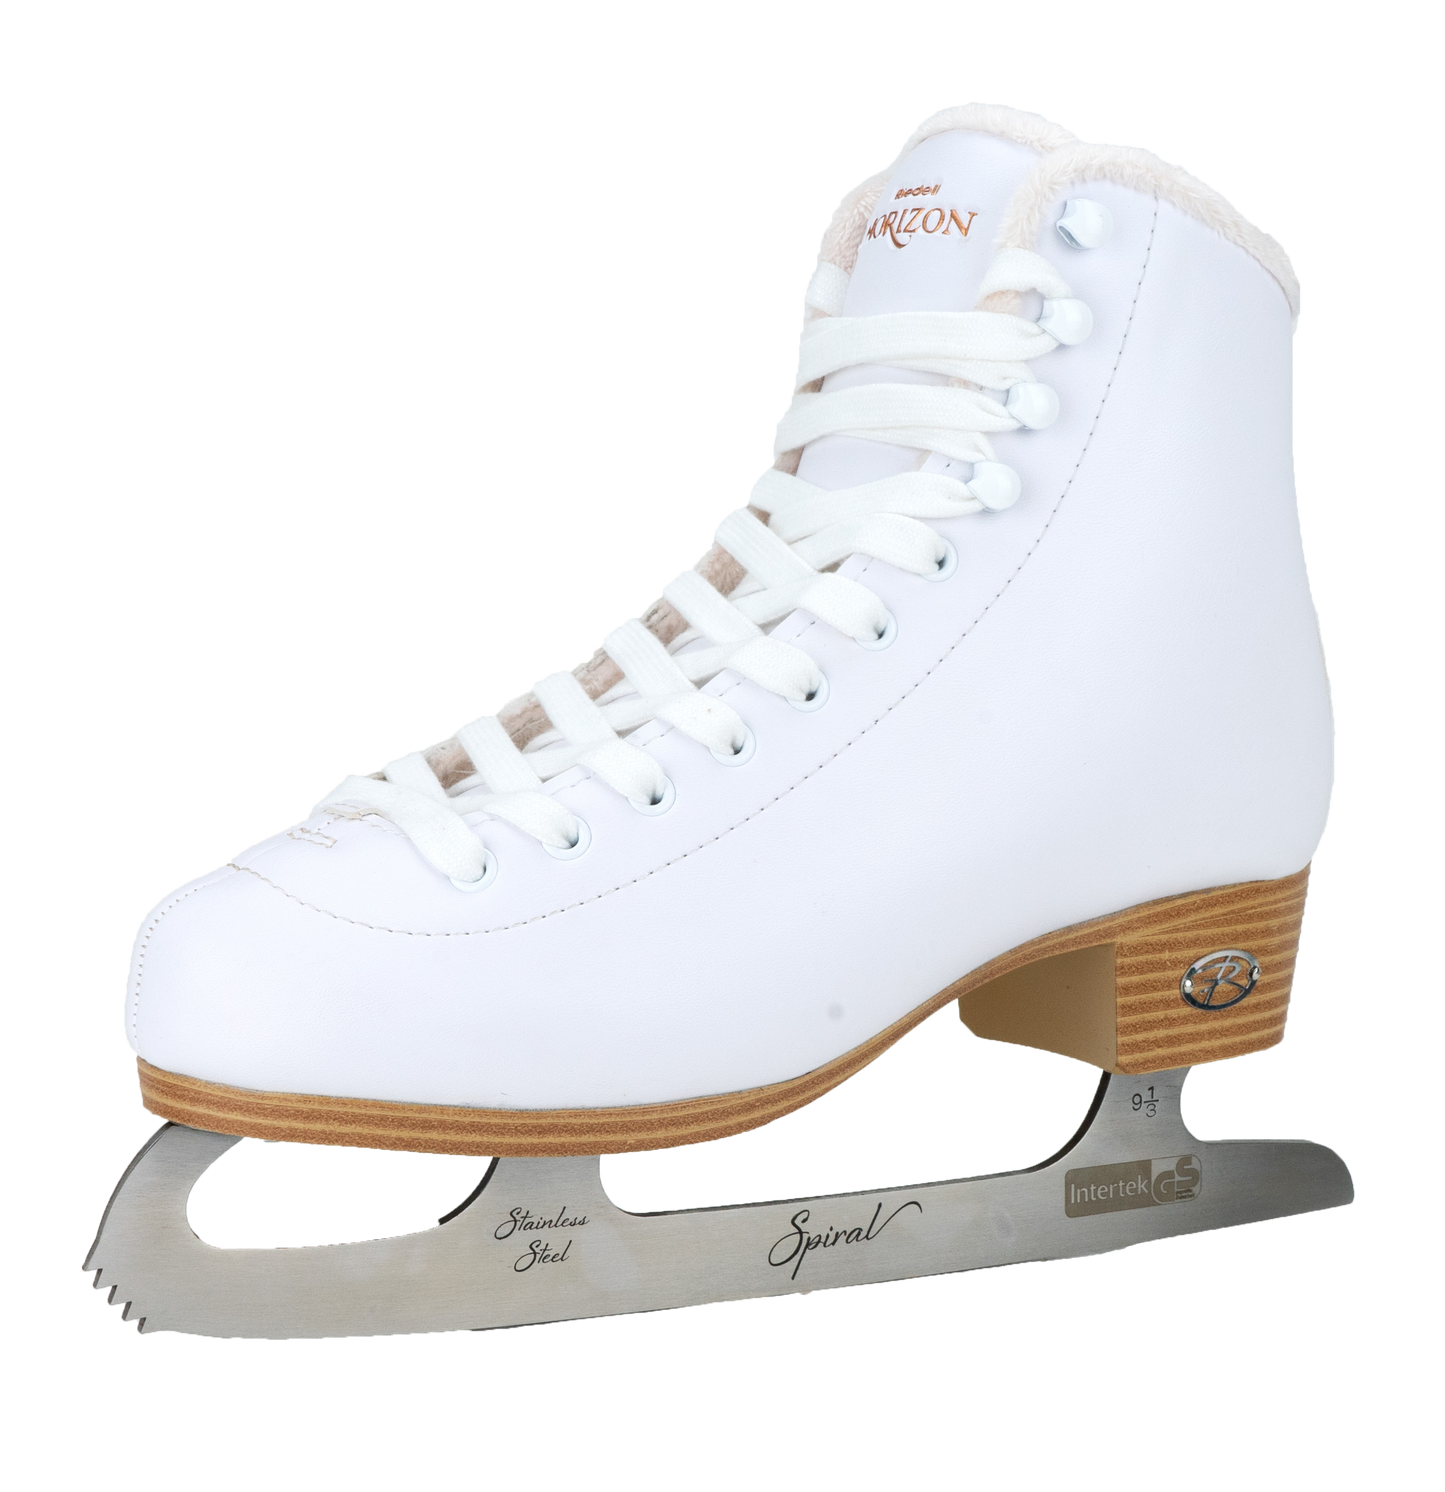 Riedell Horizon Beginner Skates in Black or White